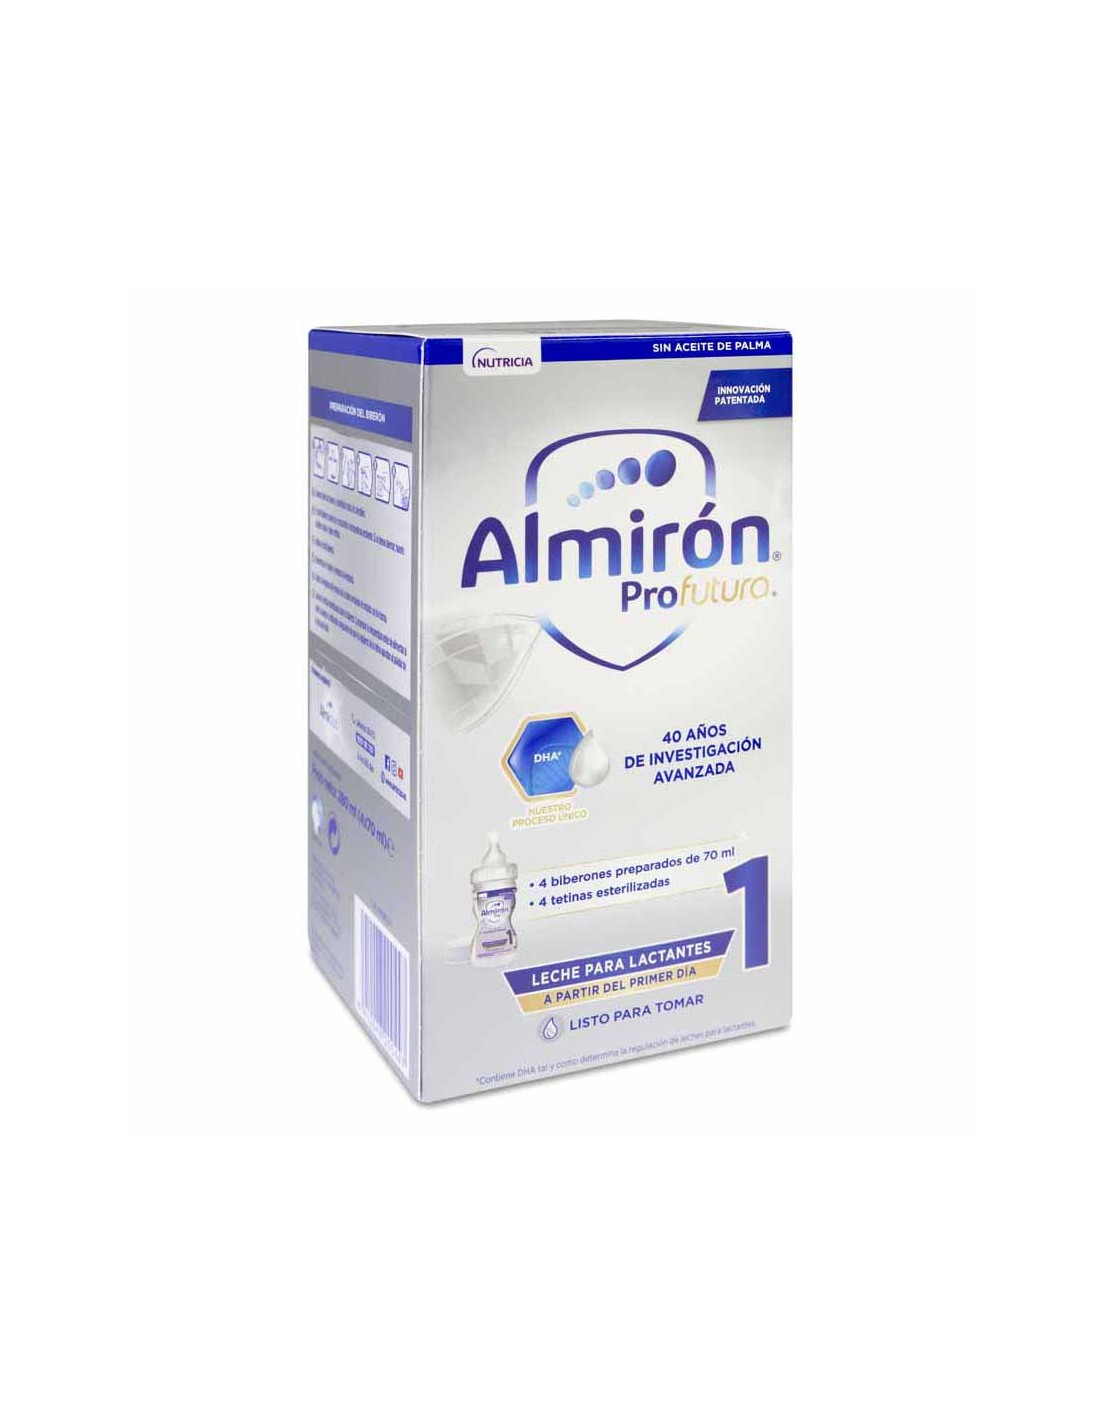 Almirón Profutura 1 Leche Lactantes 4 Biberones Preparados de 70